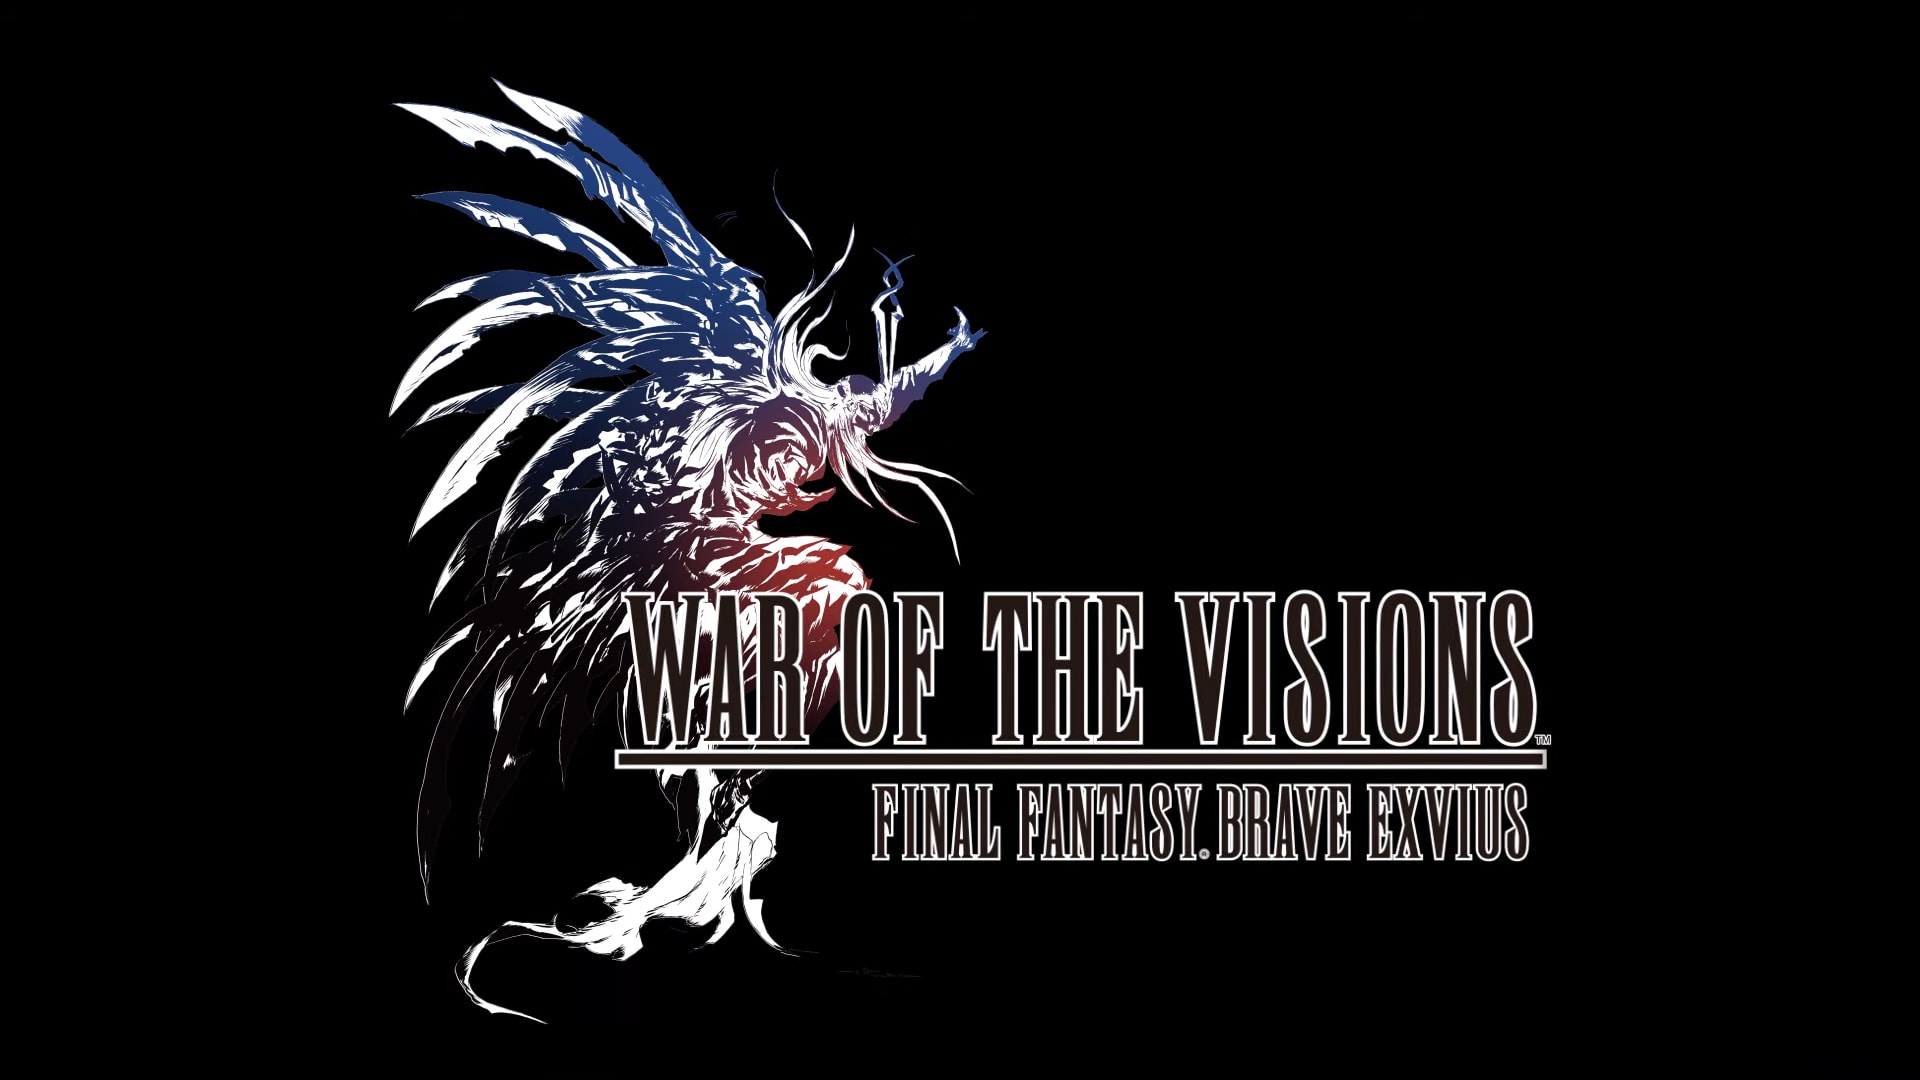 Final Fantasy Brave Nexus - HD Wallpaper 